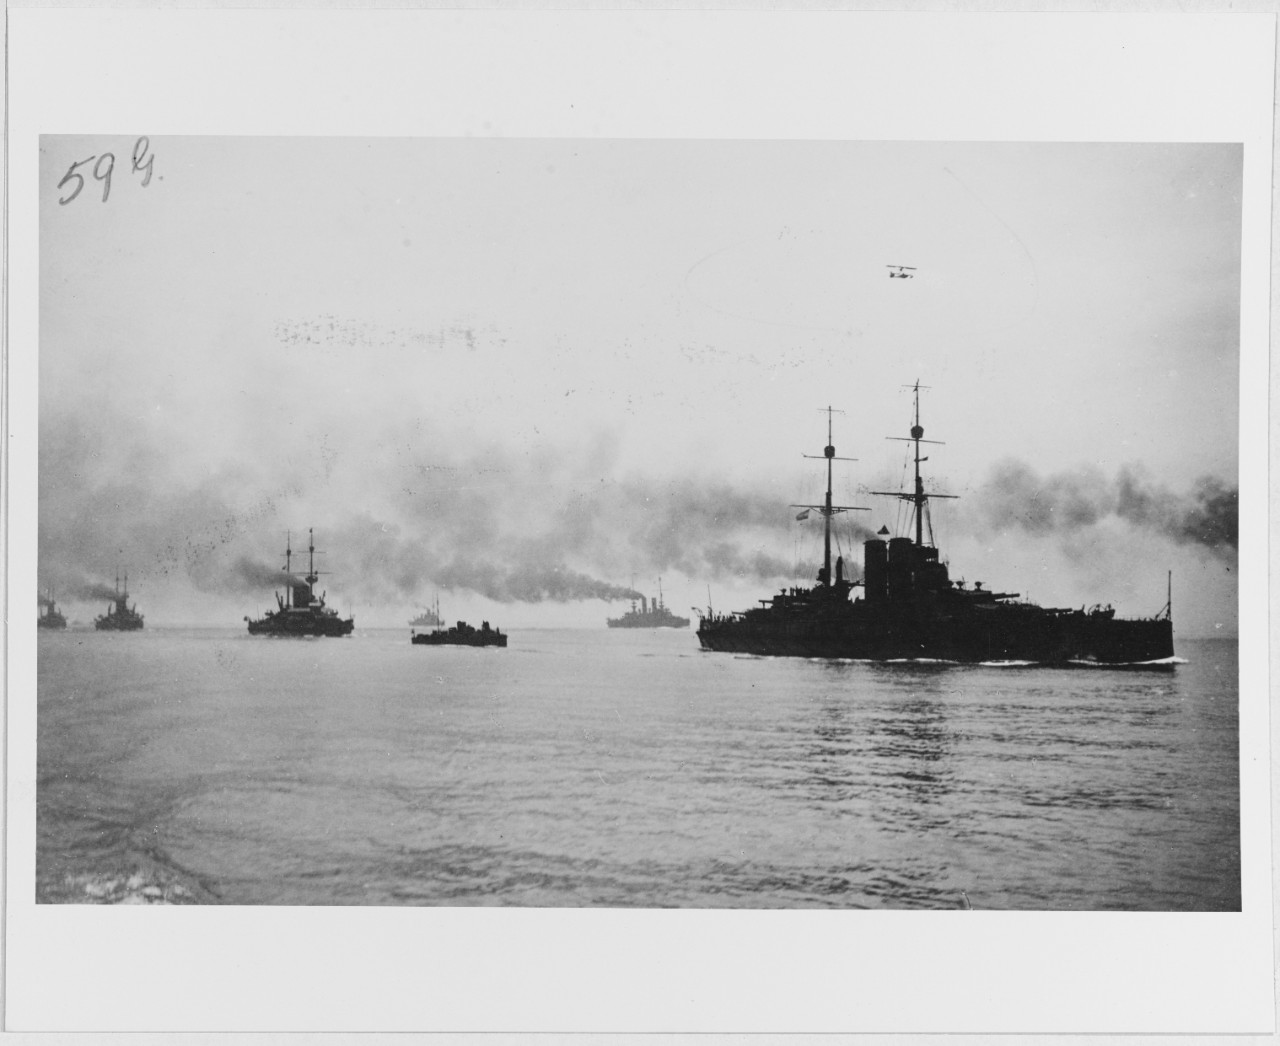 Austro-Hungarian Fleet